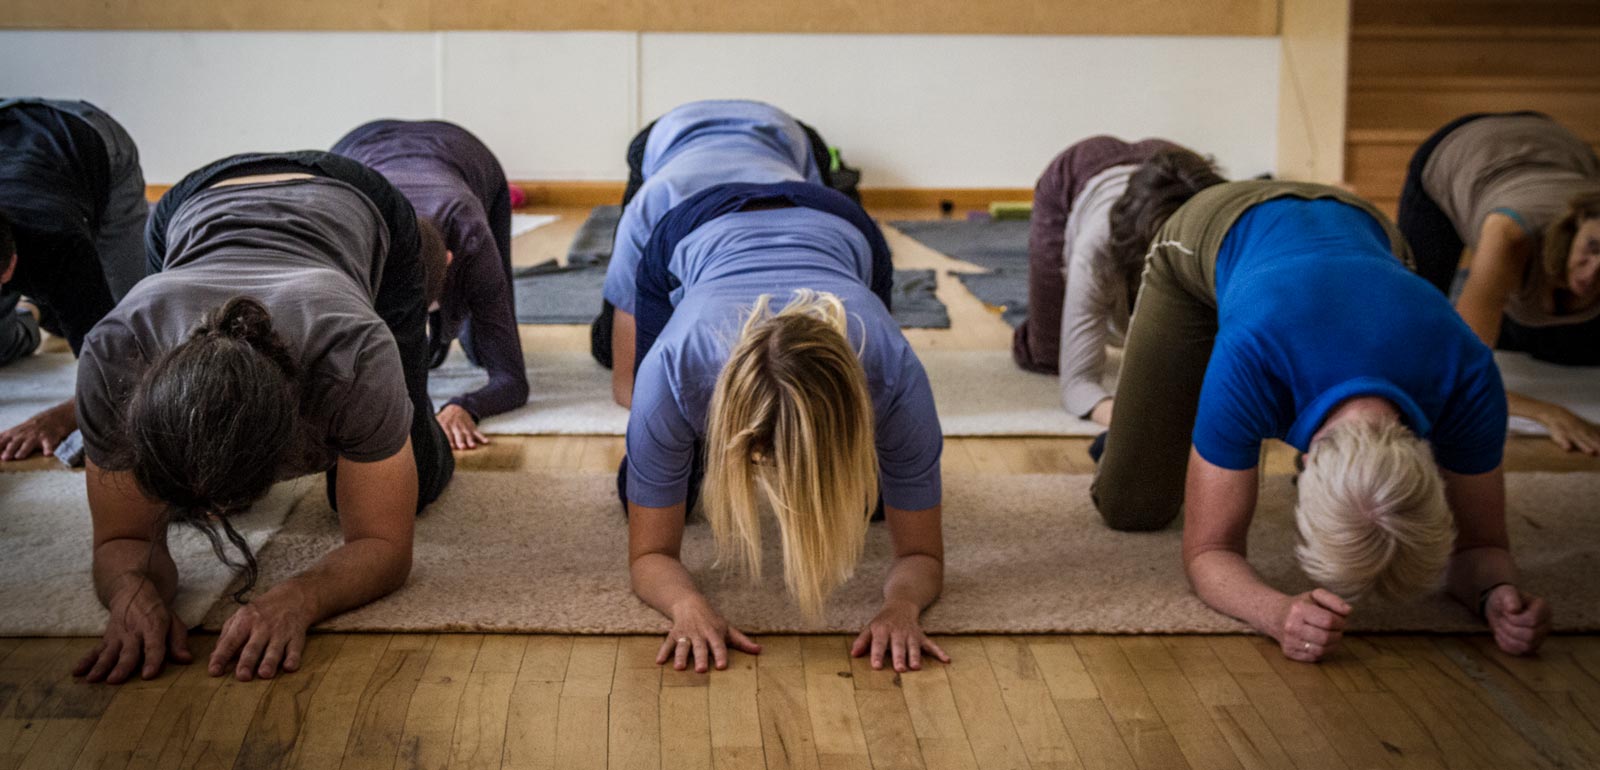 Personen auf Matten kniend machen Übungen bei Feldenkrais-Kurs in Seminarraum